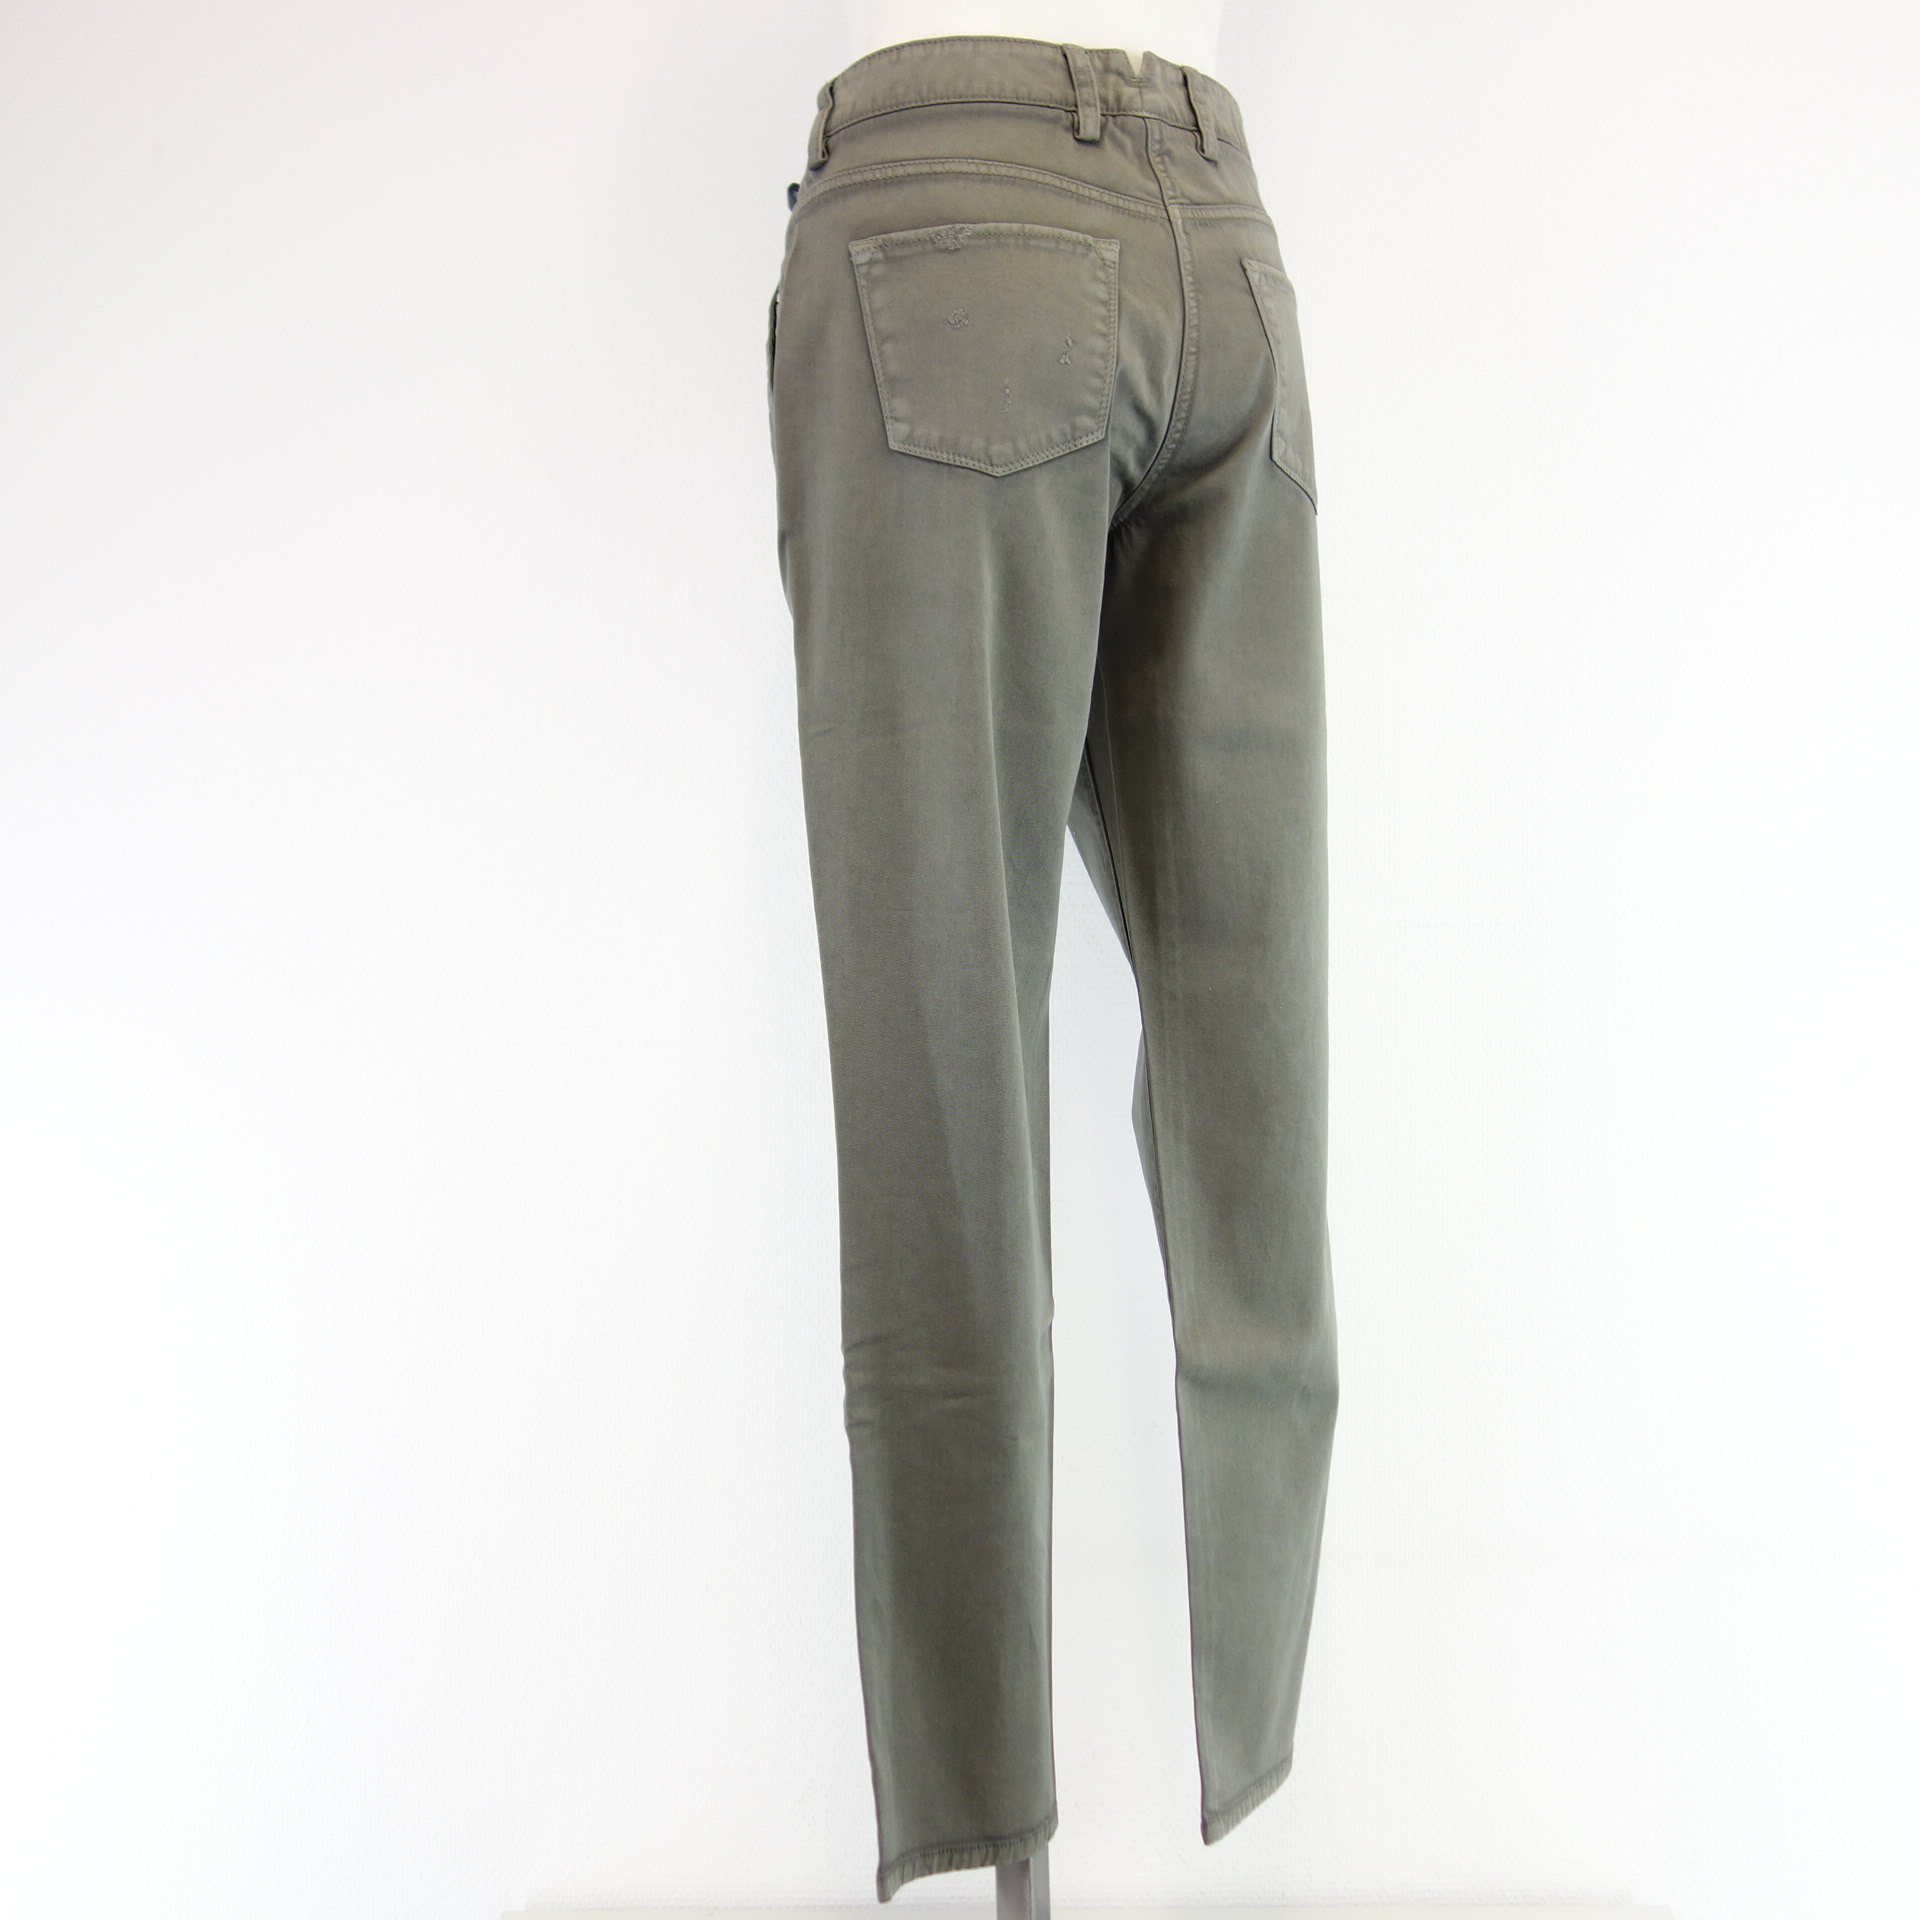 CAMBIO Damen Jeans Hose Modell Rio Khaki Grün Nieten